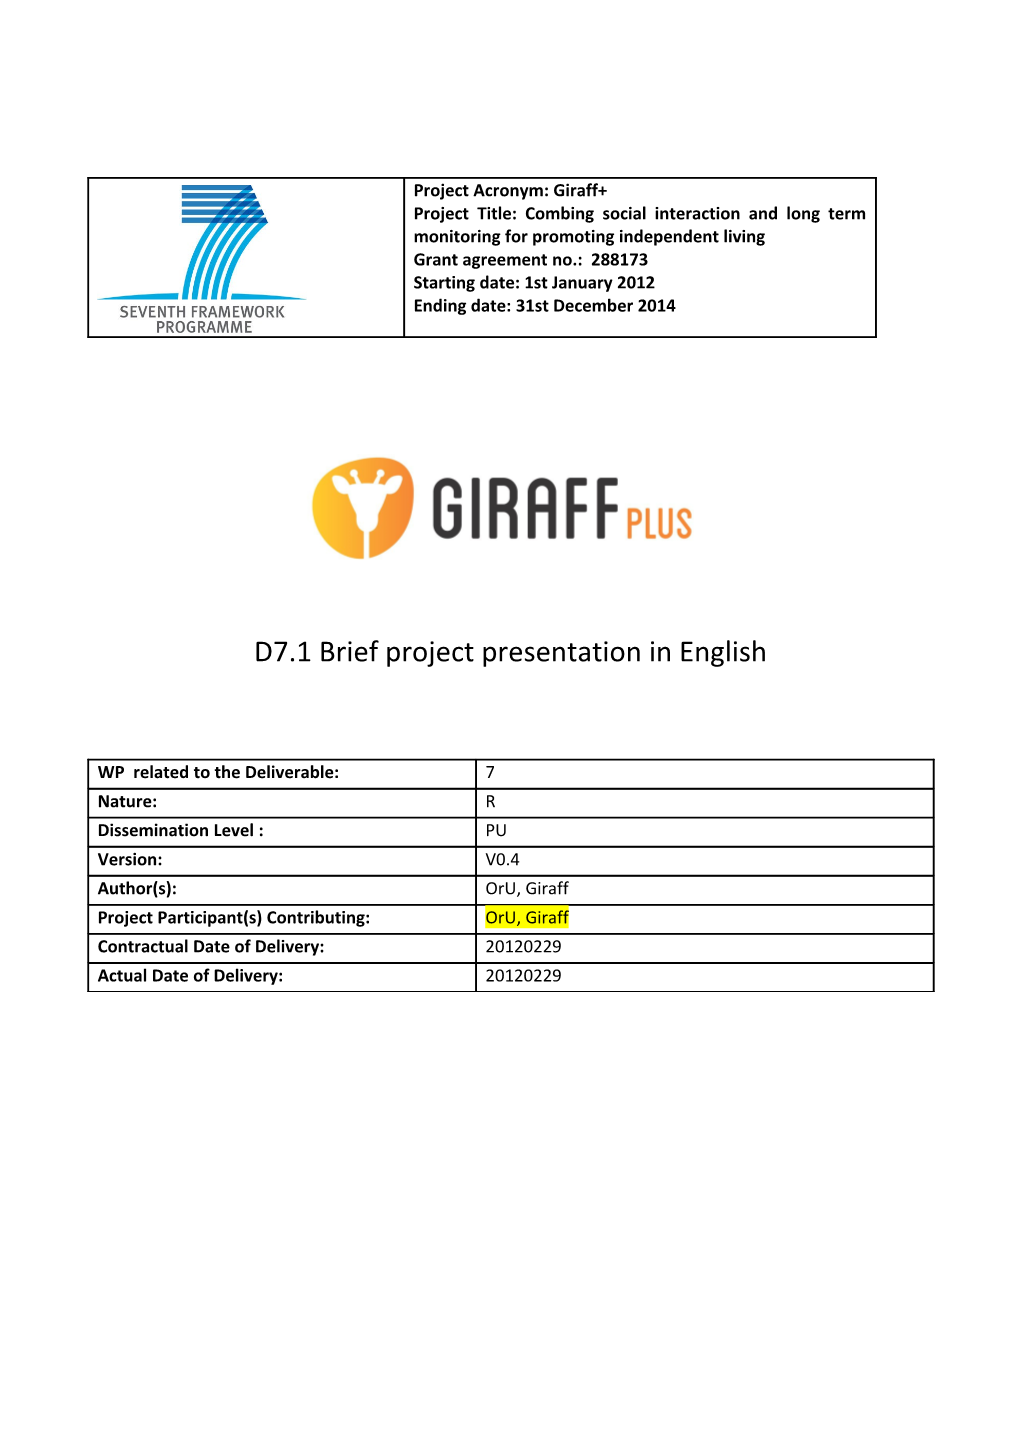 Giraff+D7.1Brief Project Description in English